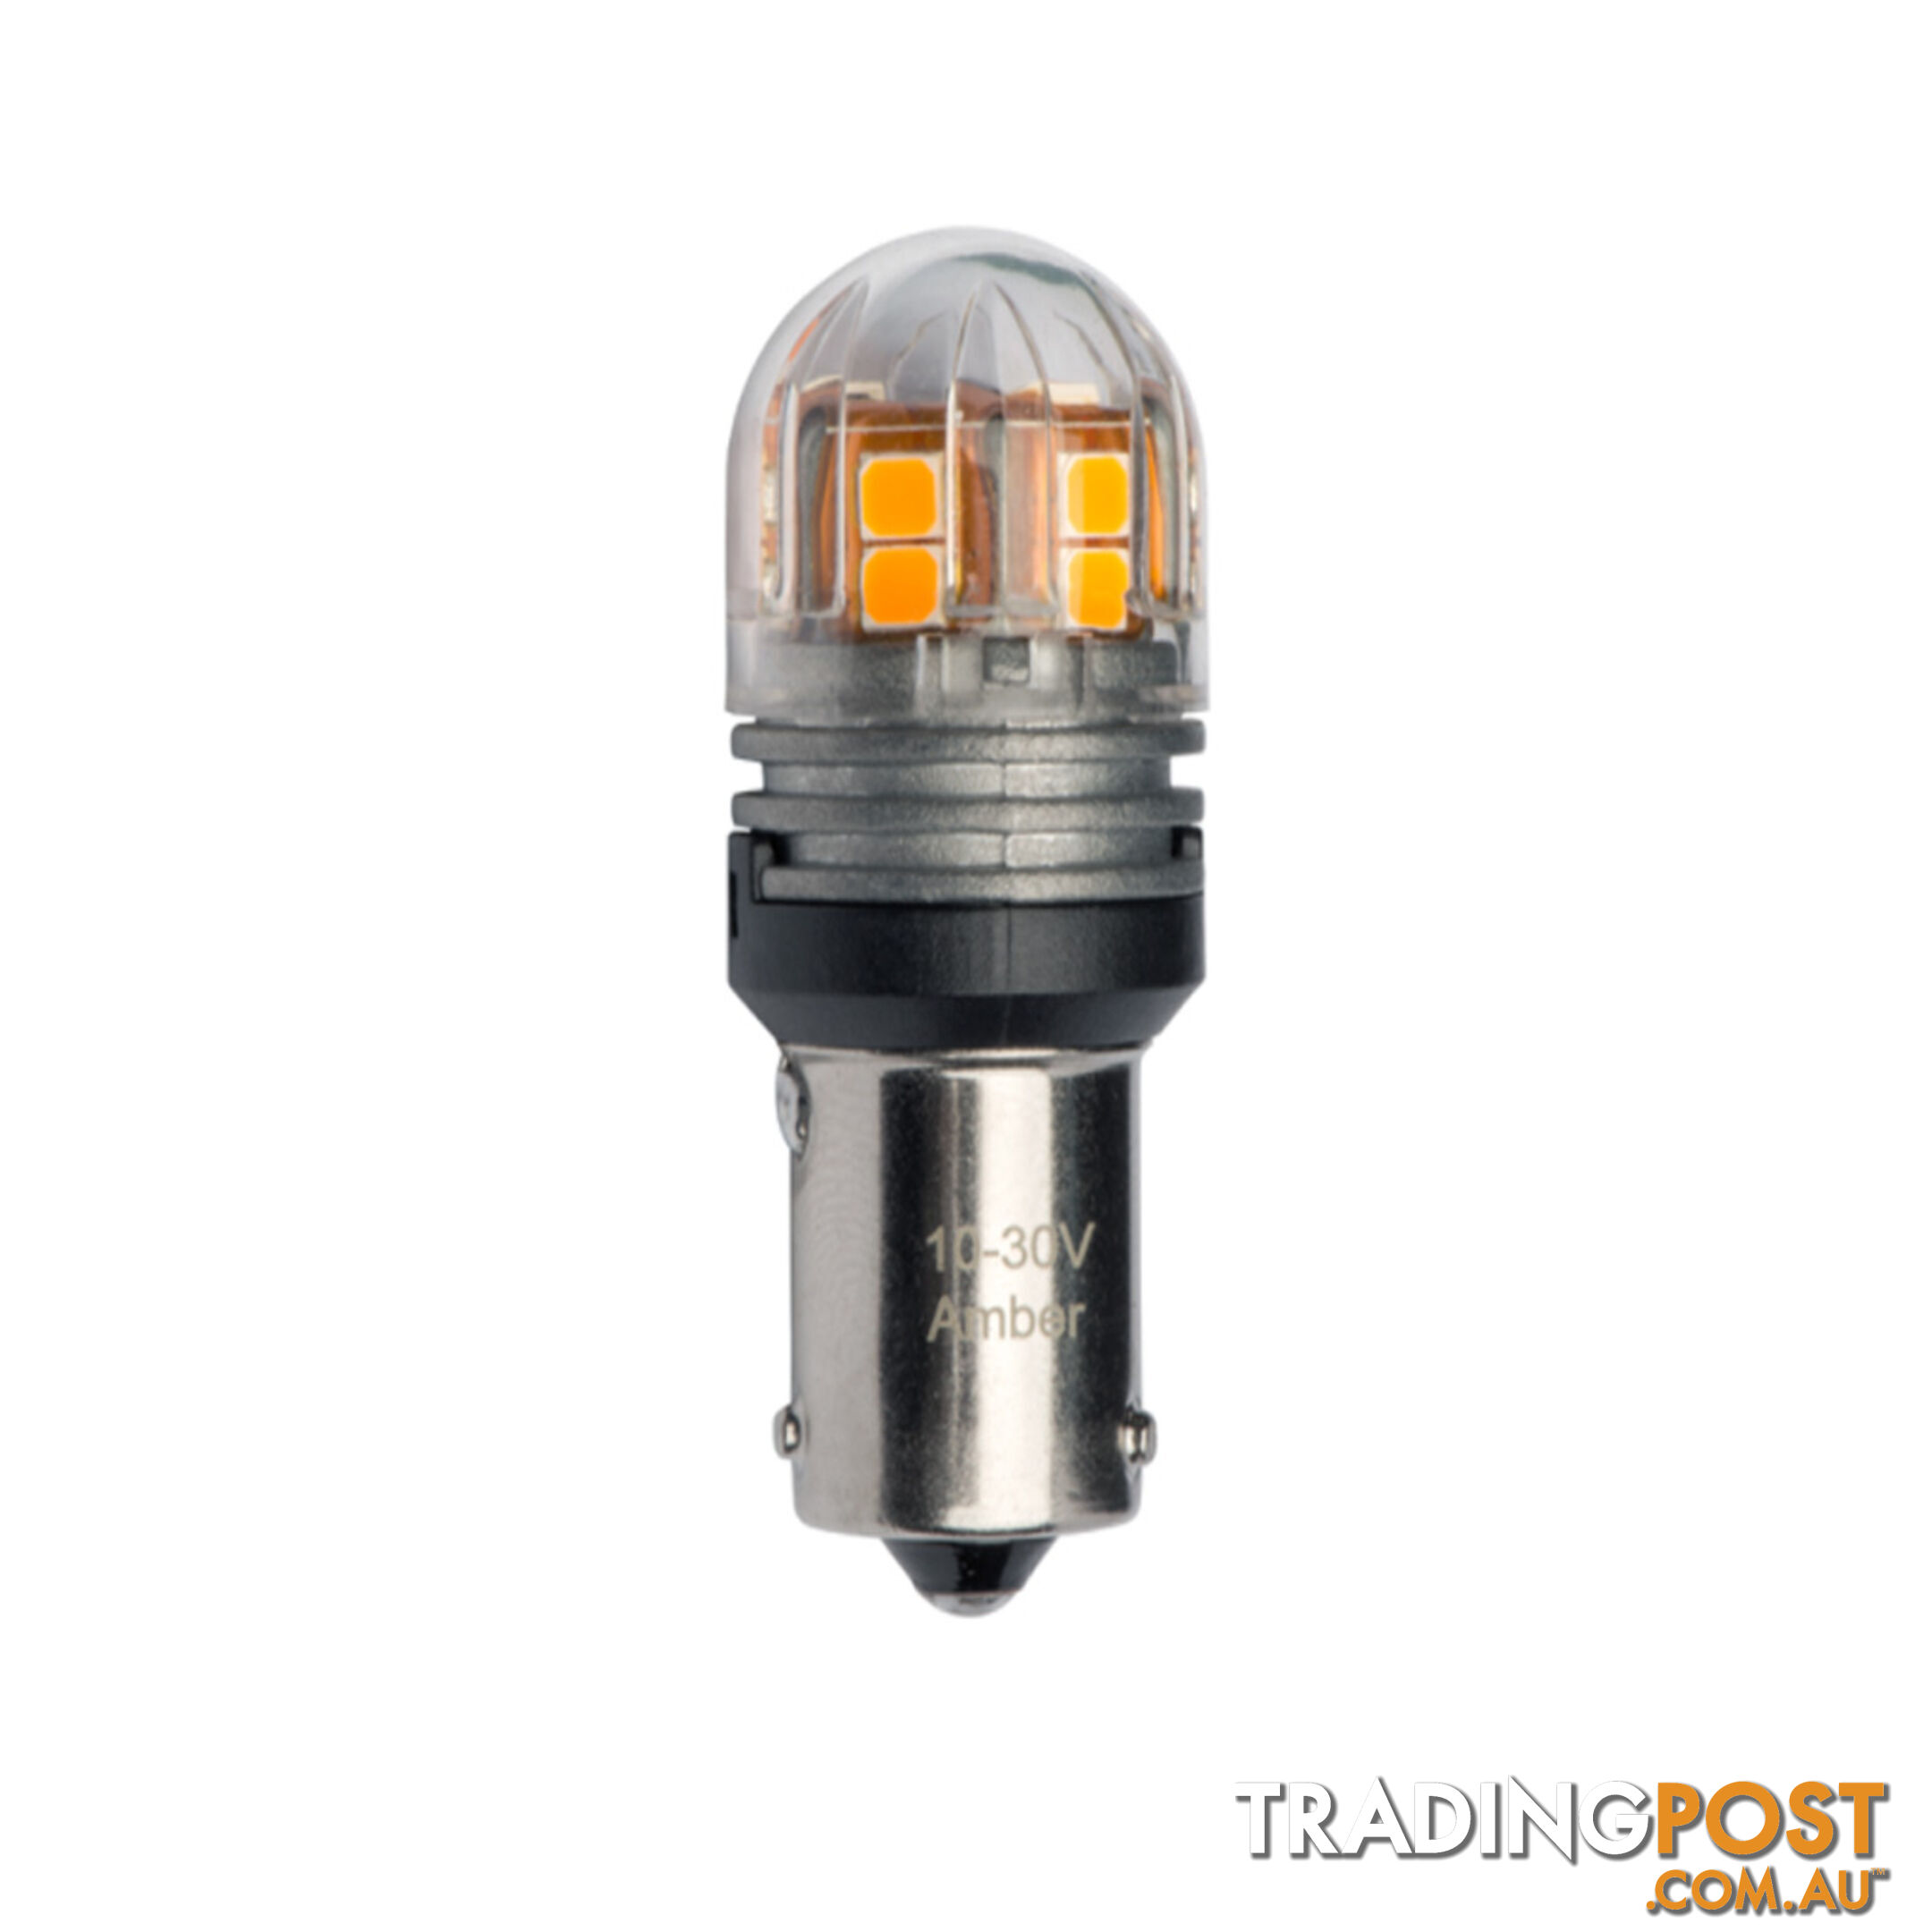 JW Speaker LED Indicator Light Bulb 12/24v 250Lm Output Bayonet Style 2pc SKU - 990142